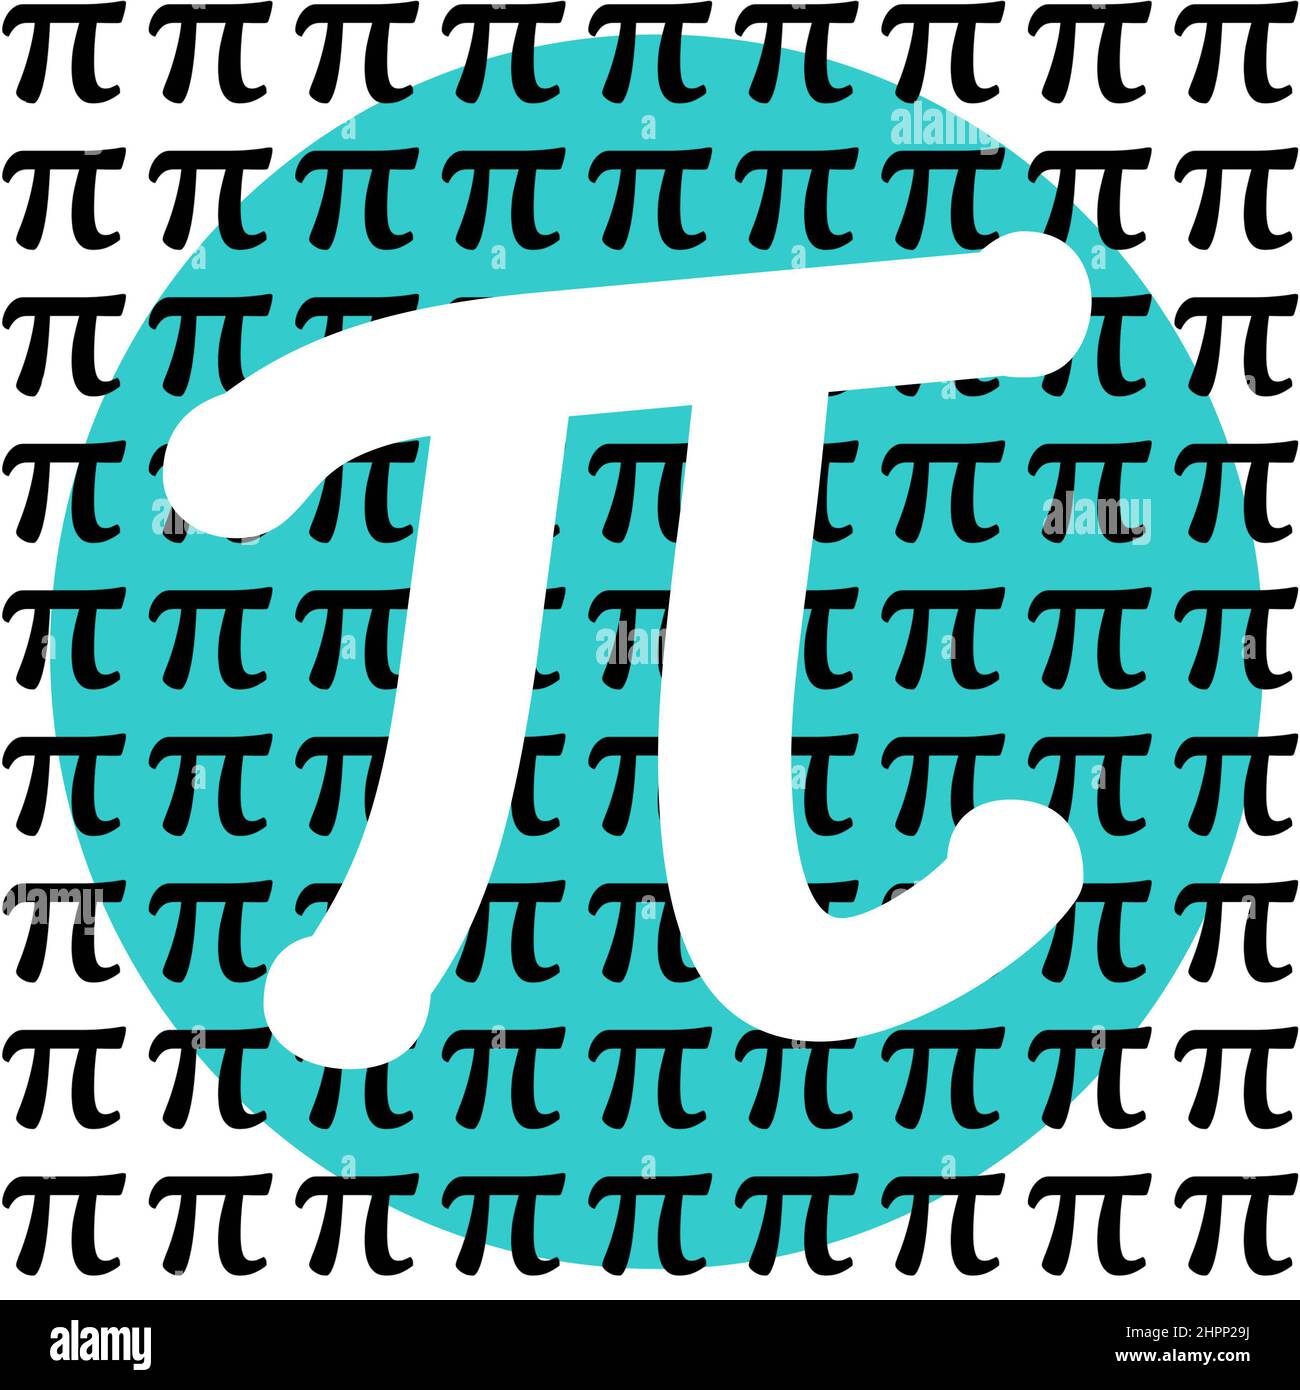 Happy pi Day Holiday pi Sign typographie en bleu turquoise, noir et blanc. STEM concept d'éducation pour encourager l'apprentissage des mathématiques, de la physique et d'autres sciences Banque D'Images